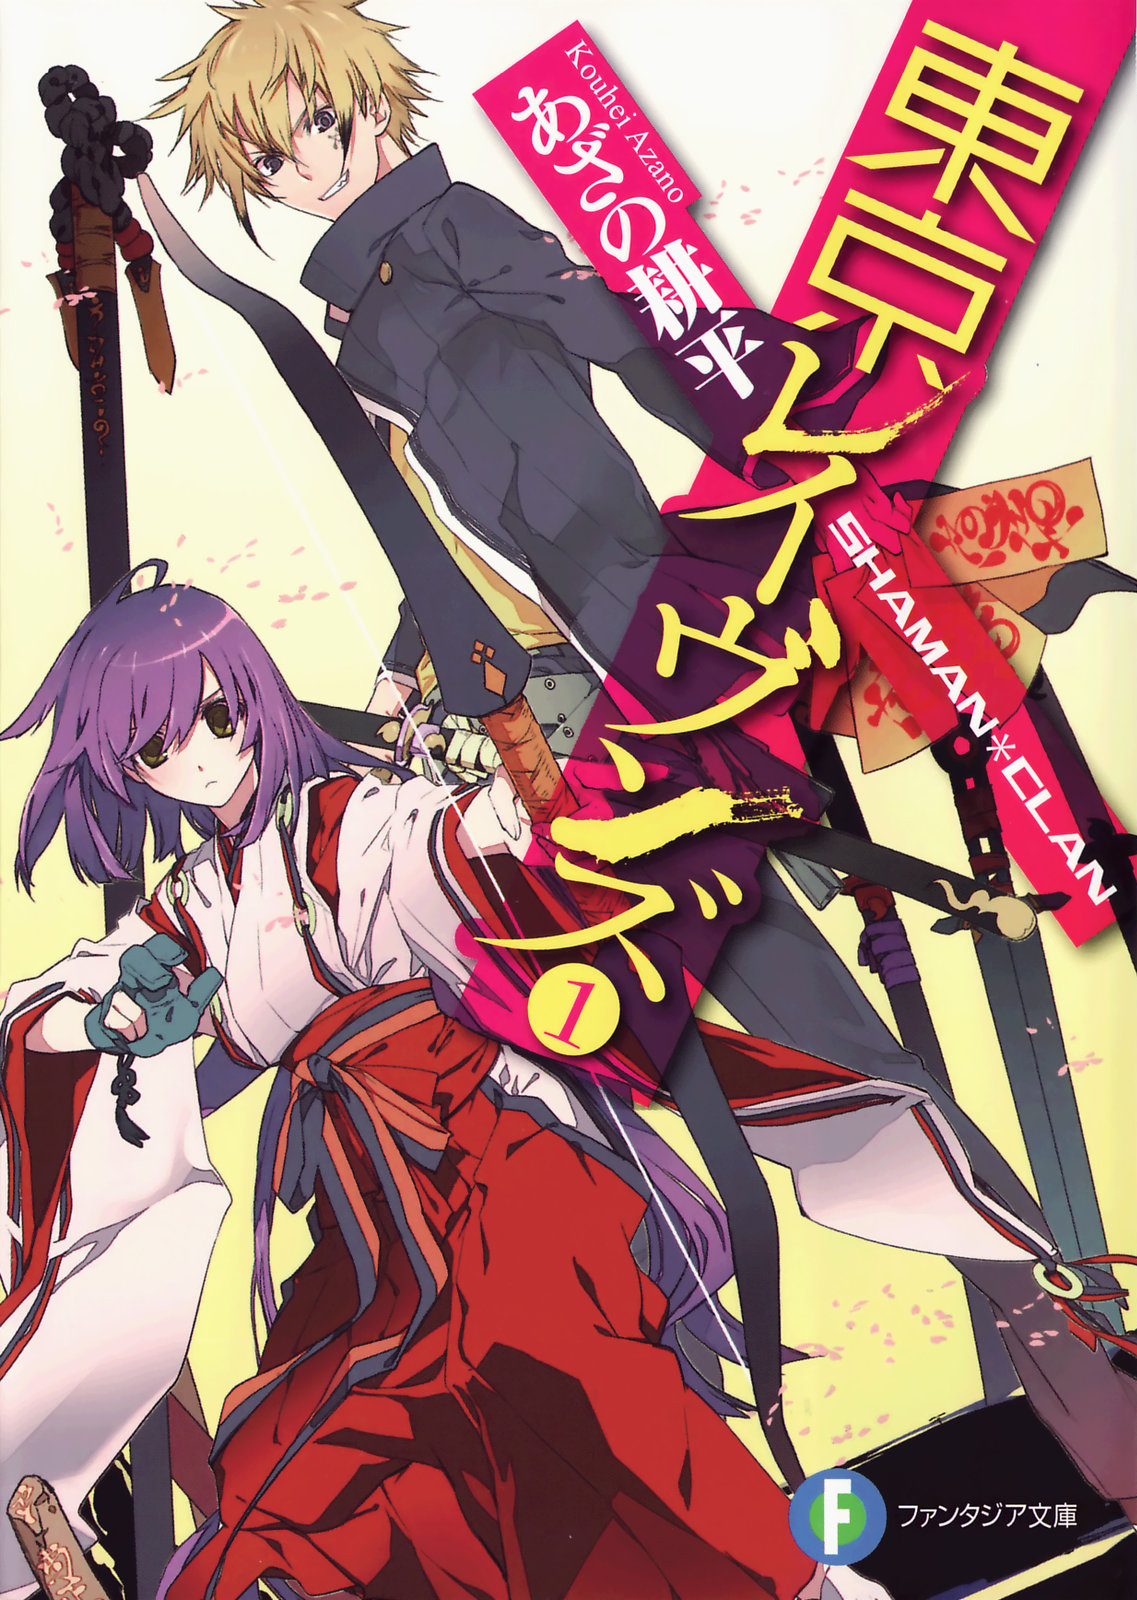 Tokyo Ravens: Volume 1 Cover - Minitokyo